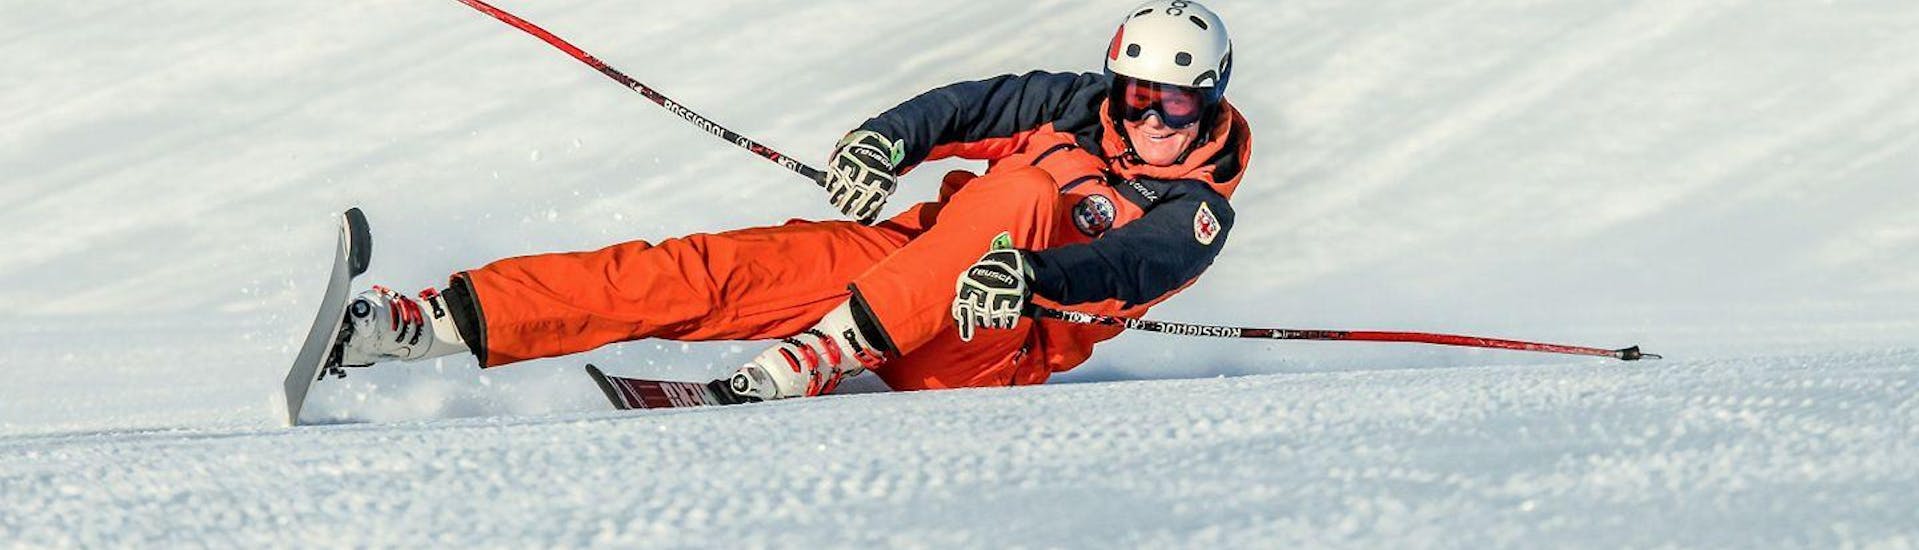 Cours particulier de ski Adultes dès 15 ans pour Tous niveaux.